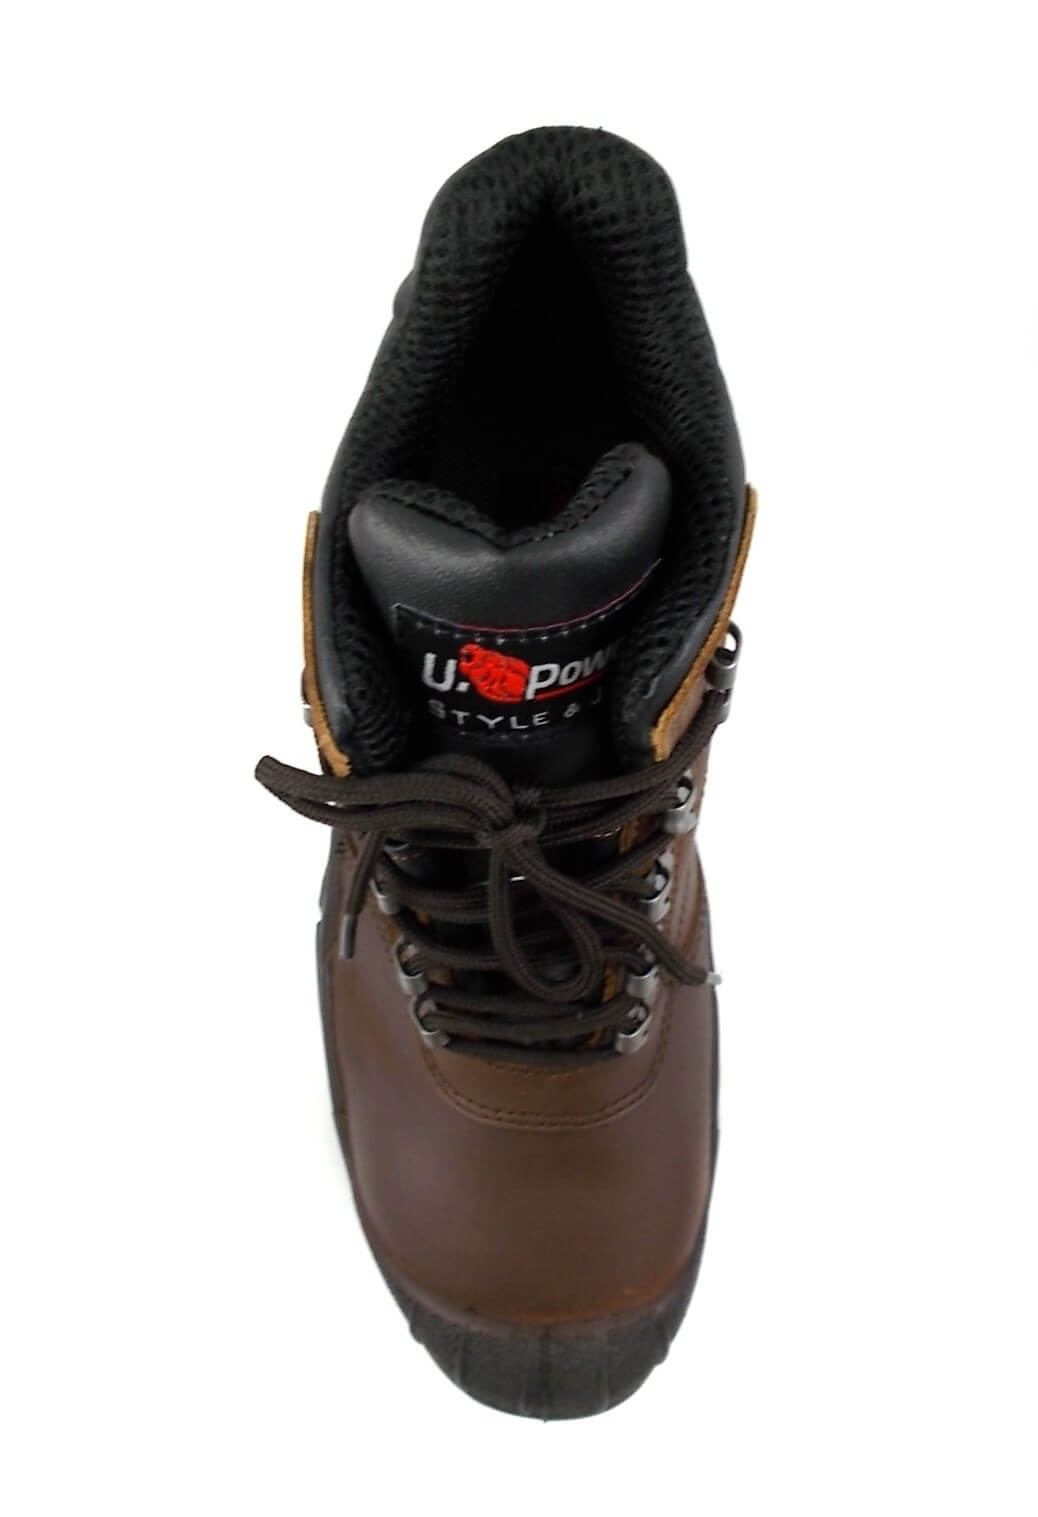 Chaussure securite montante resistante Katmai S3 SRC U-Power cotepro marron vue 3